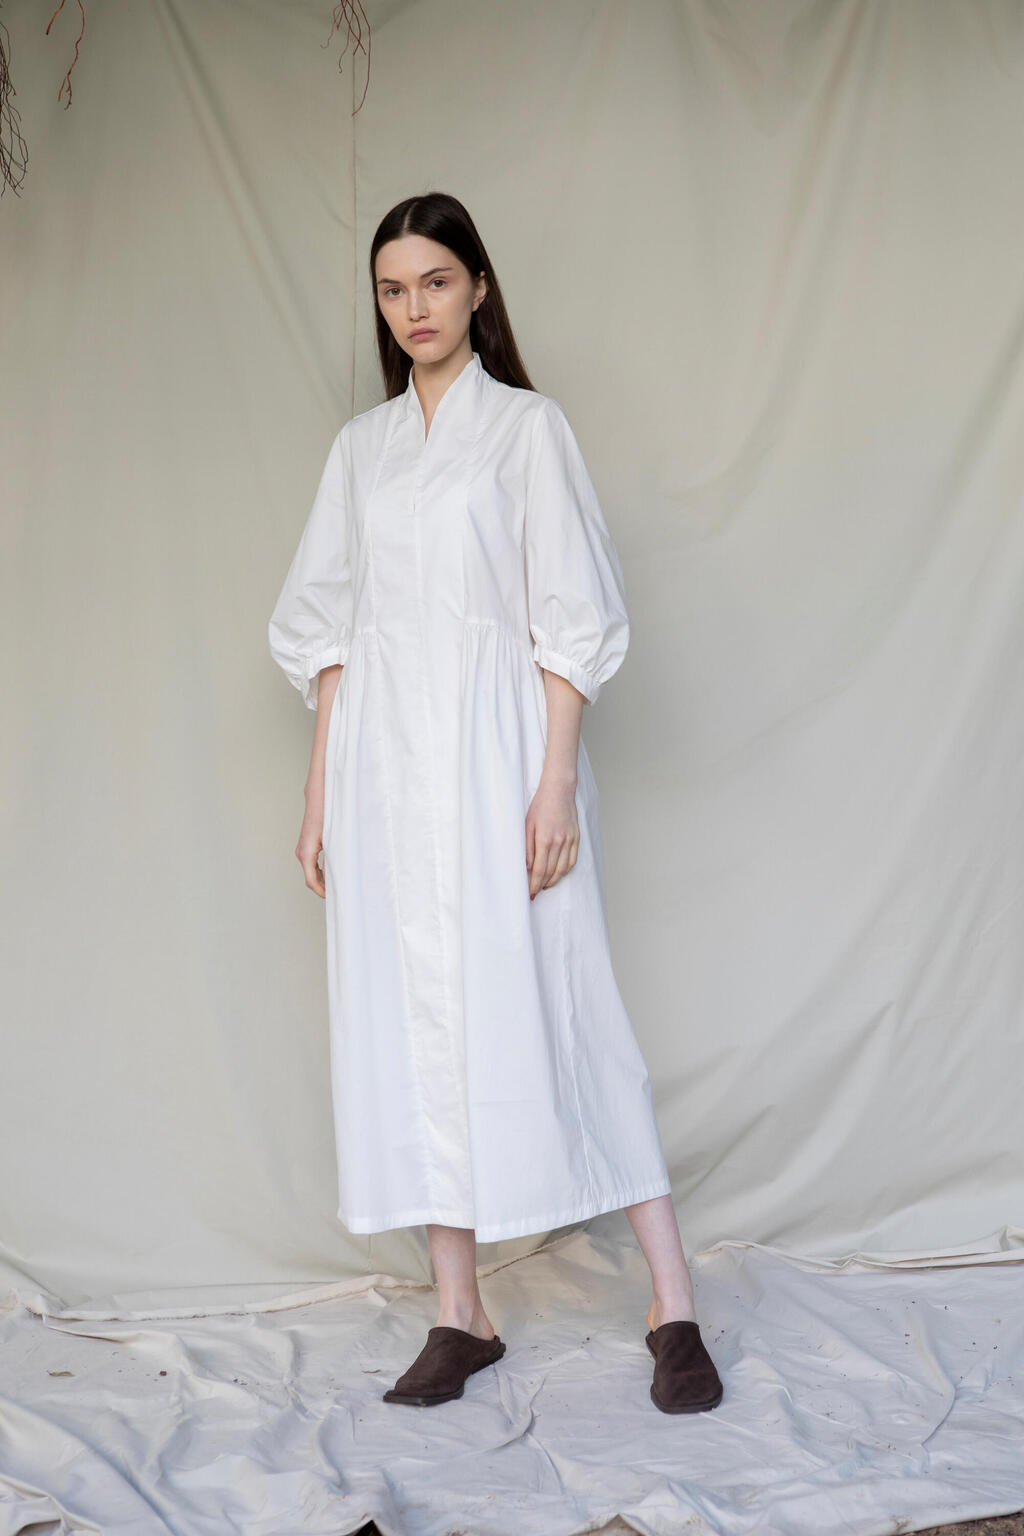 שמלת כותנה לבנה בעיצובה של חגית חזן של המותג Hoko פנאי